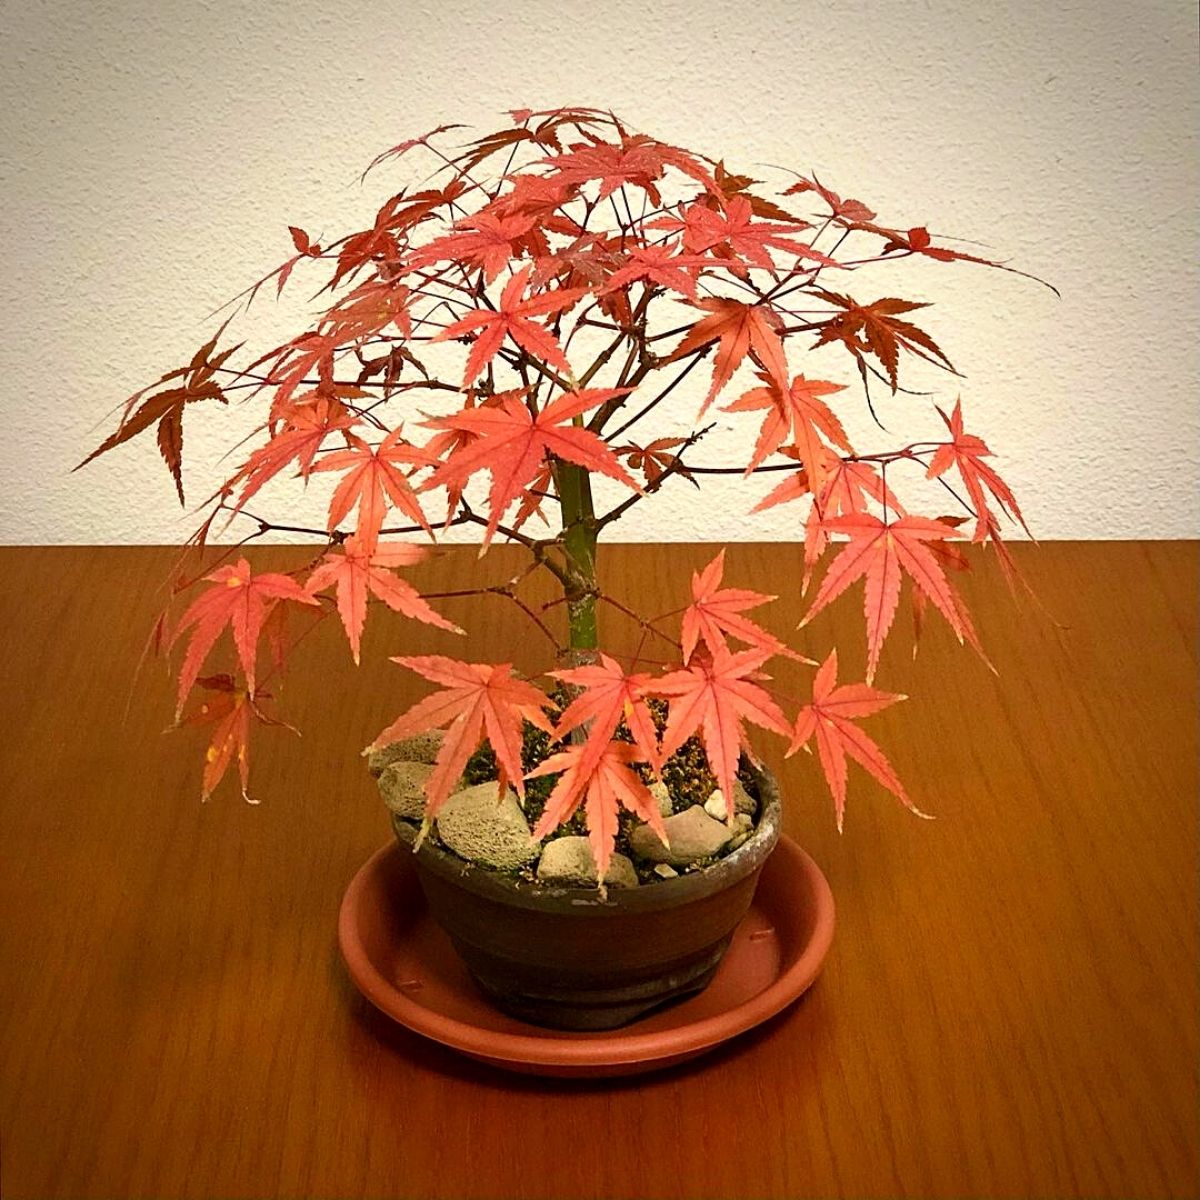 A Miniature Japanese Maple Bonsai